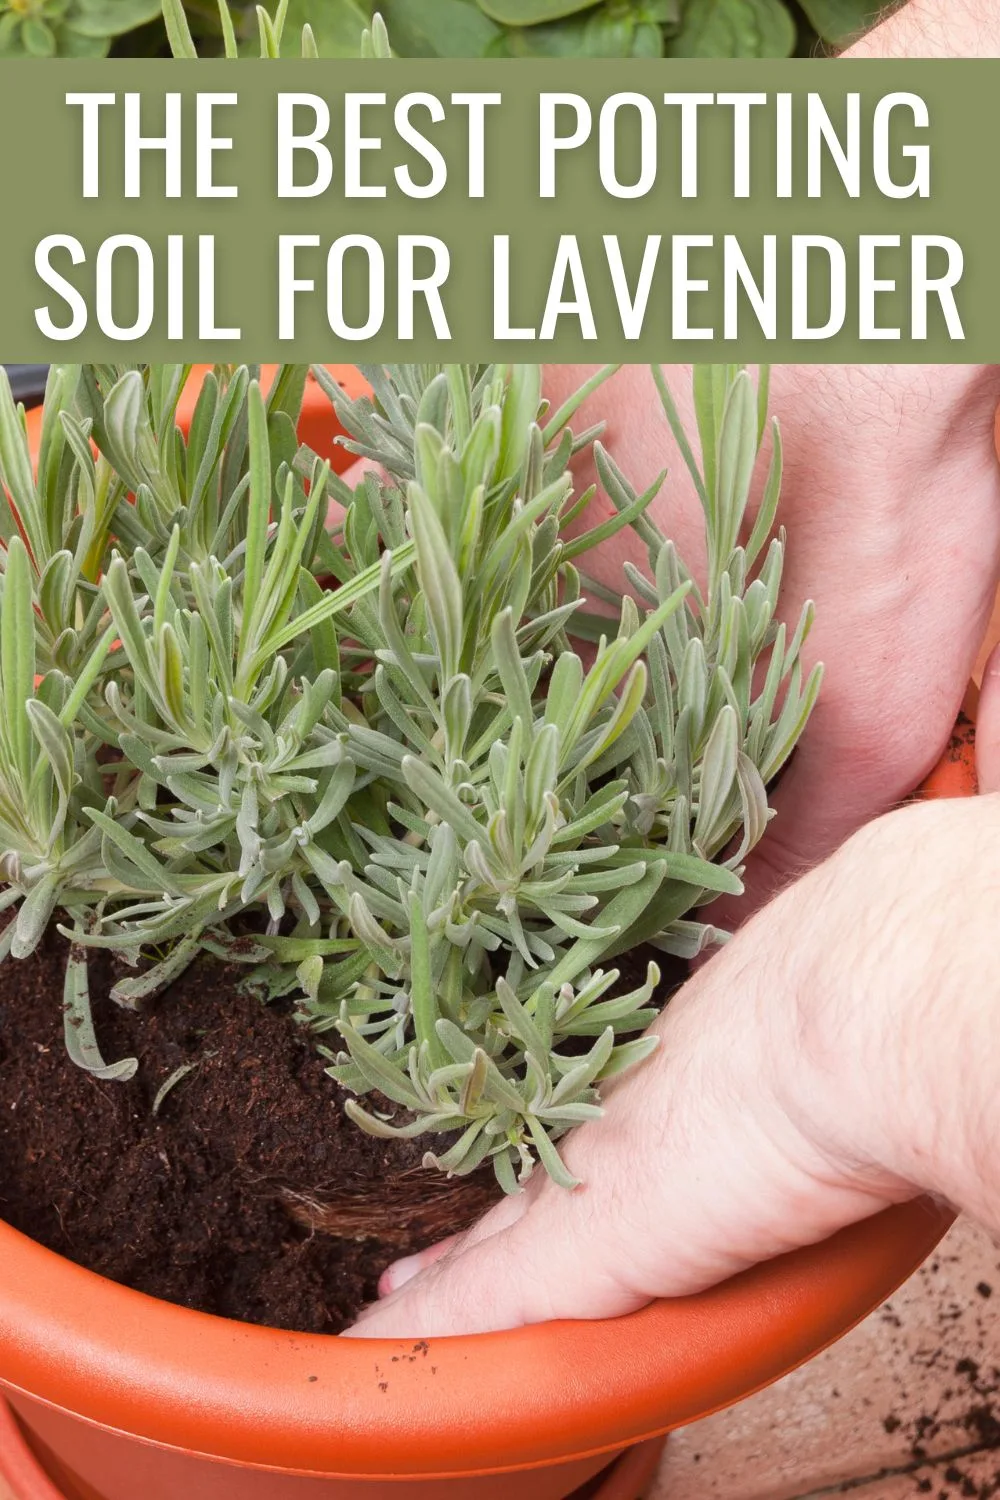 The best potting soil for lavender.